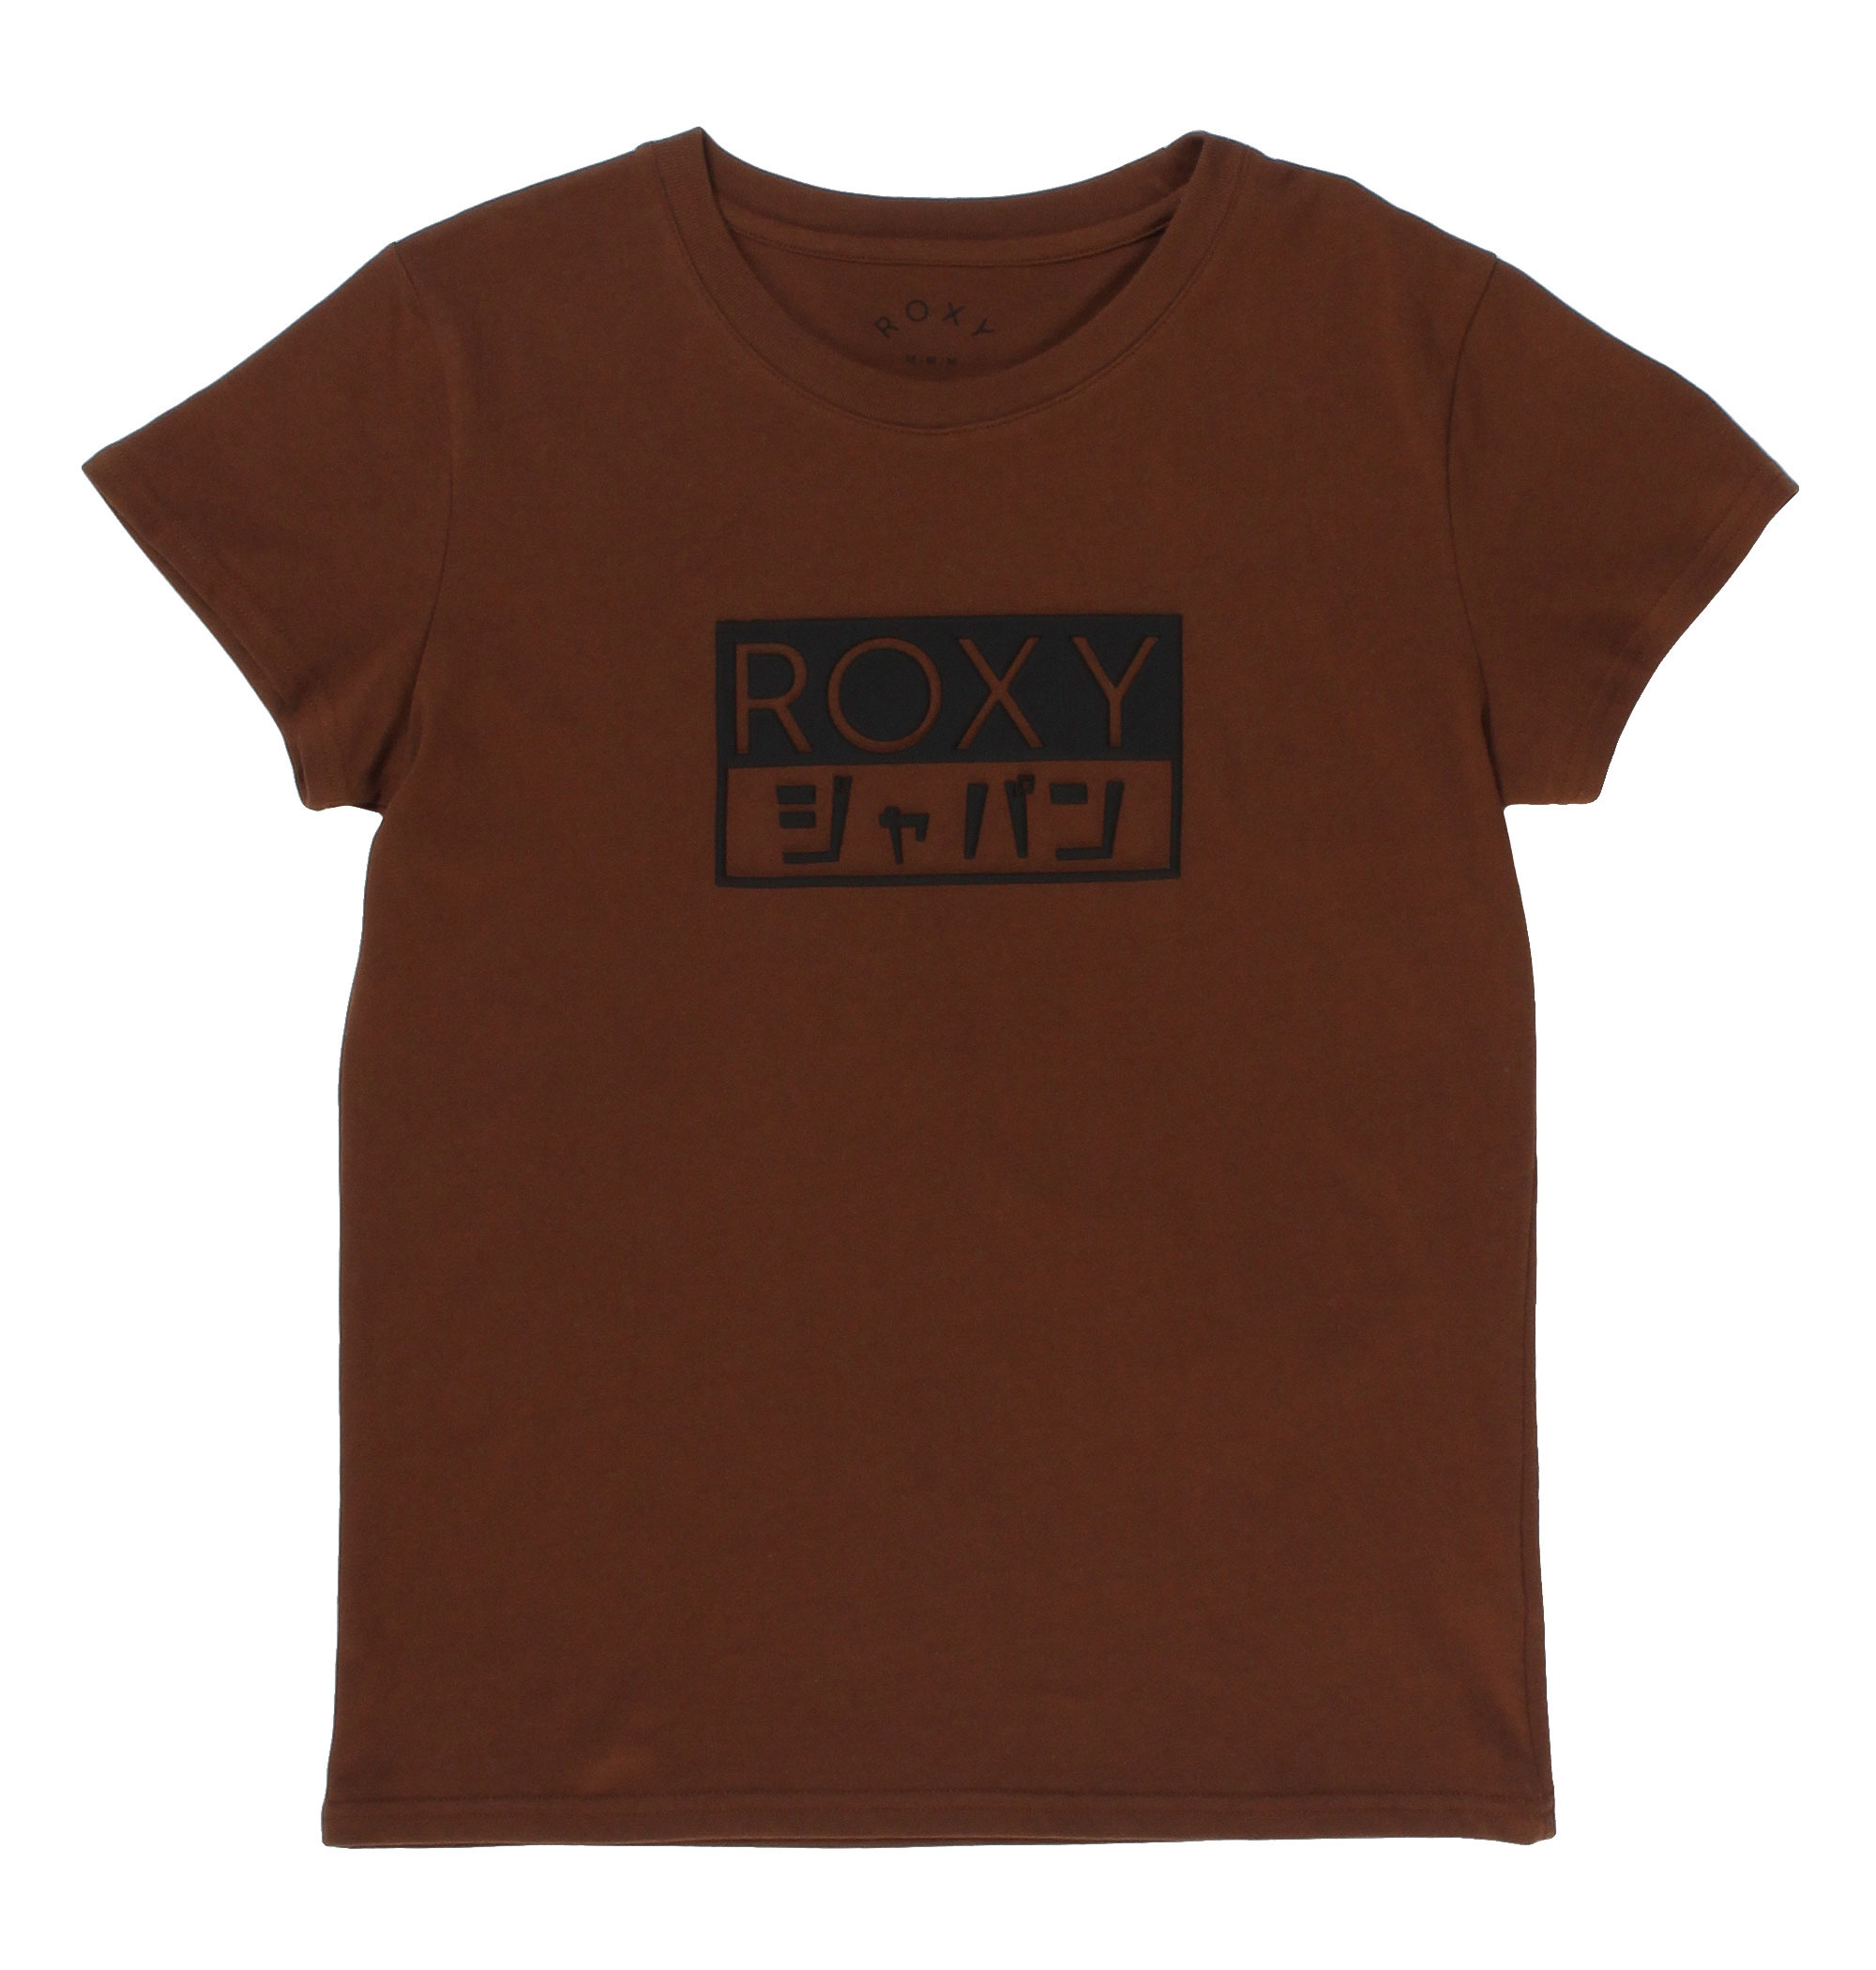 30%OFF！ROXY BOX TEE ボックス状のラバープリントにカタカナロゴを取り入れ、目を引くデザインに仕上げたTシャツ